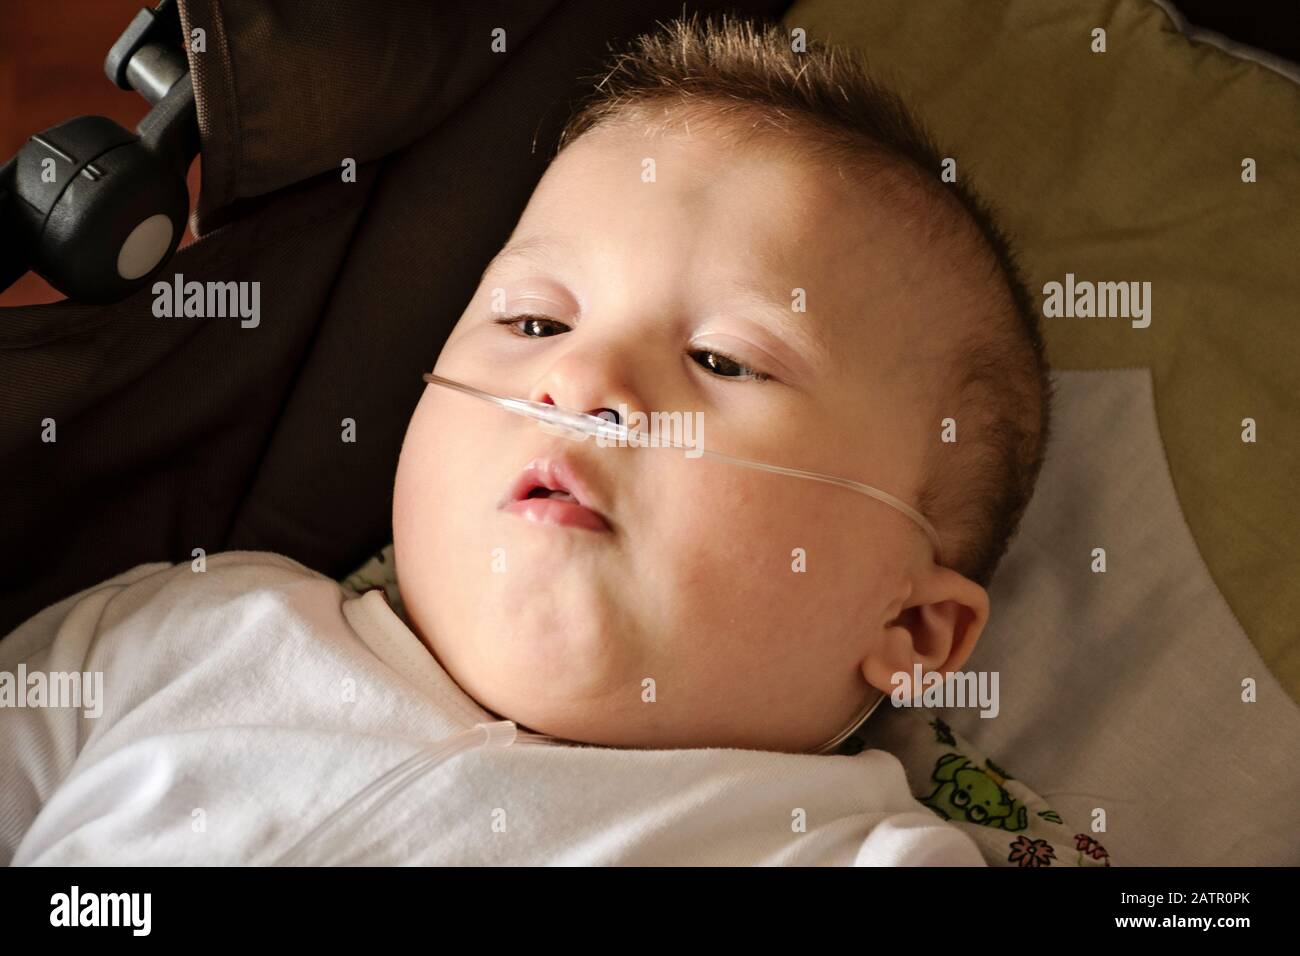 Baby Junge mit zerebraler Pläse erhält Sauerstoff über Nasenprongs, um die Sauerstoffsättigung zu gewährleisten. Nasenkatheter bei einem Patienten im Krankenhaus. Stockfoto